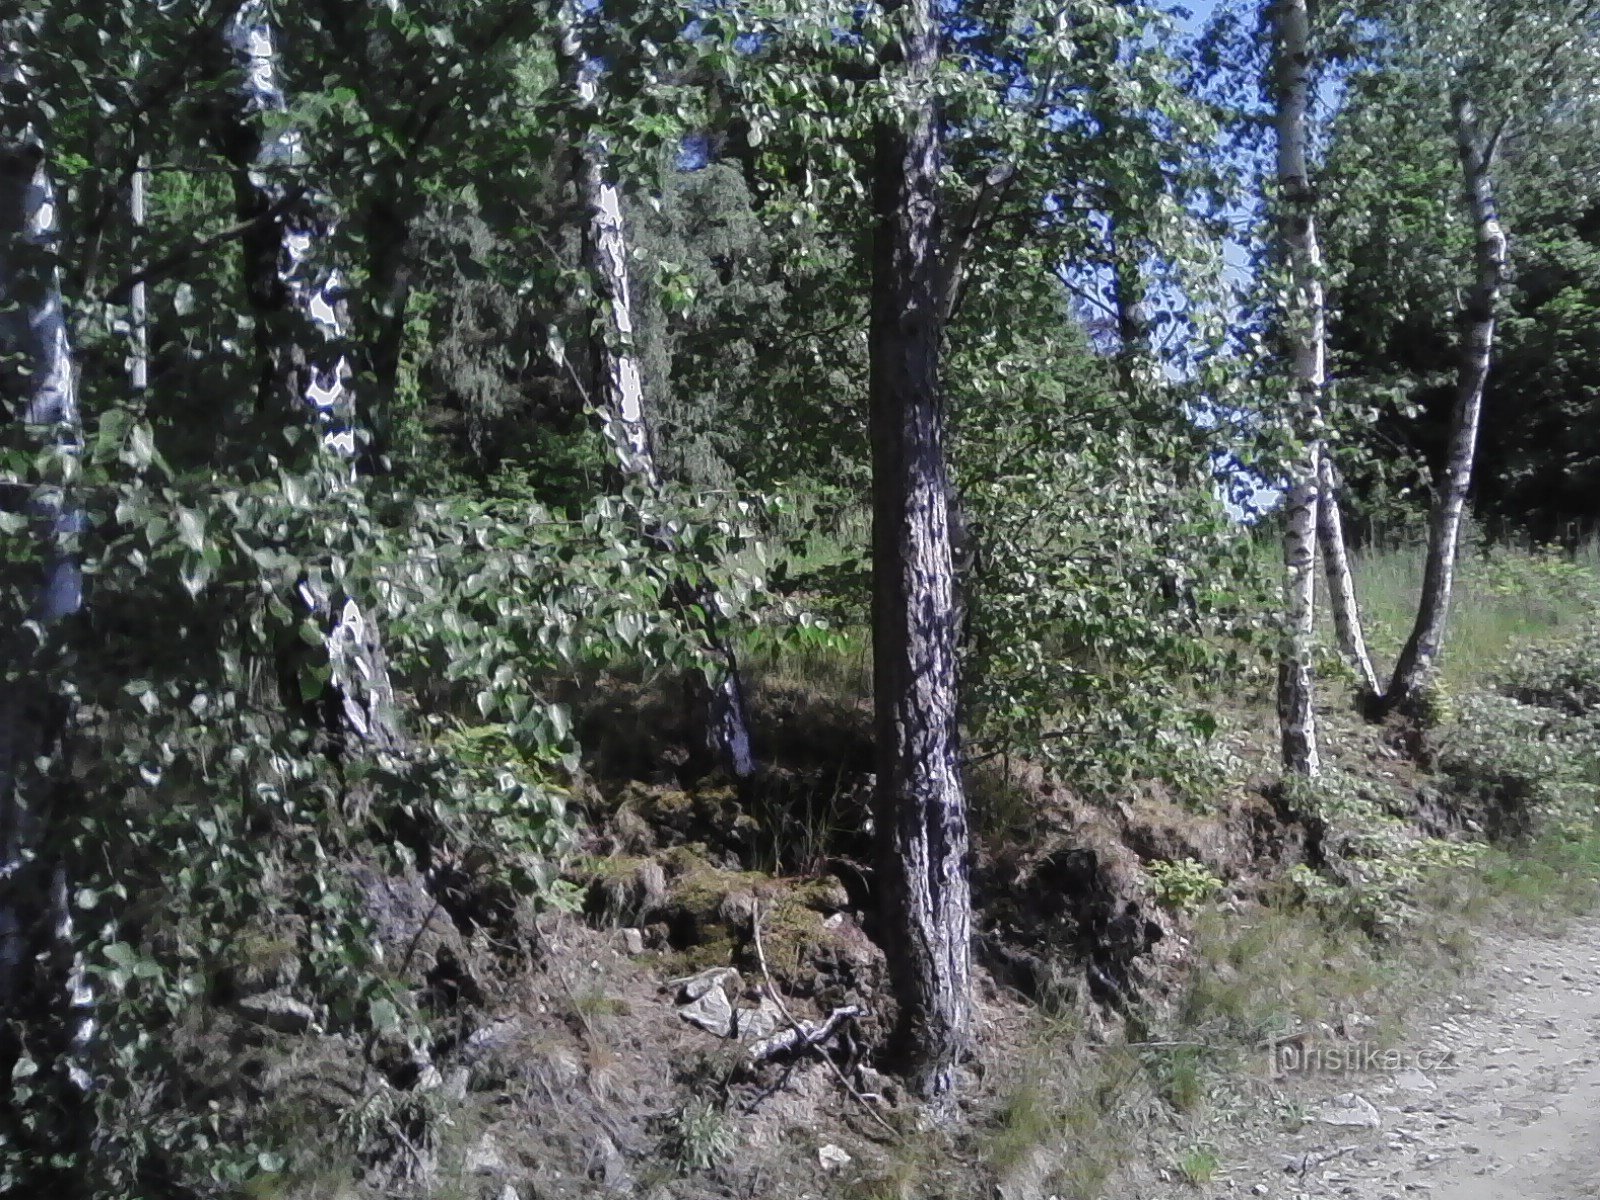 2. Je suis déjà en train de gravir les collines jusqu'à Javorová skála.